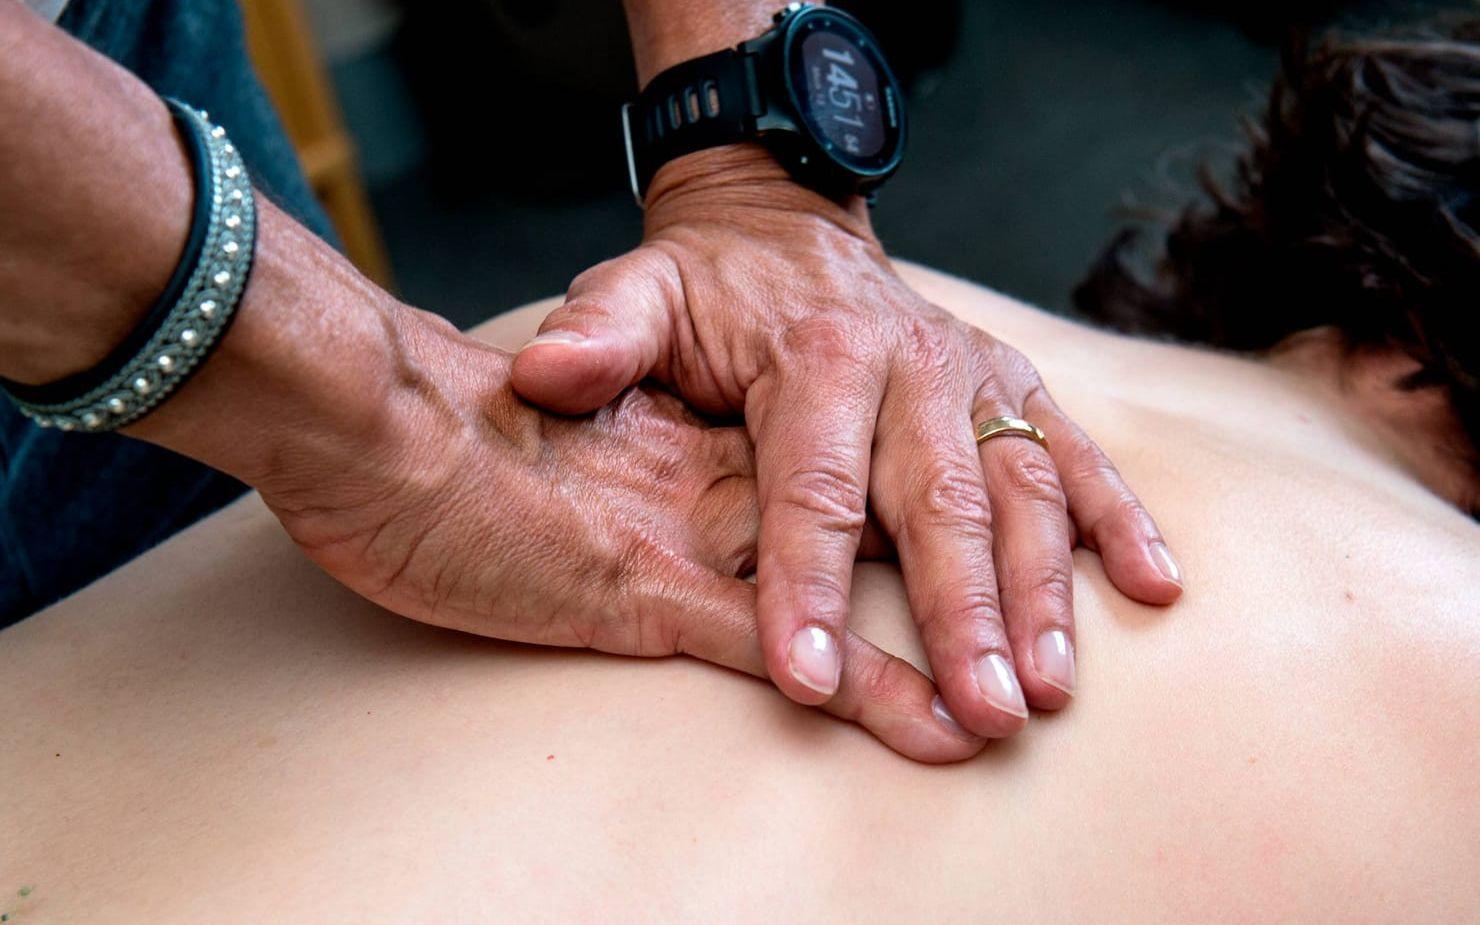 Daglig massage gör demenssjuka piggare enligt en avhandling.